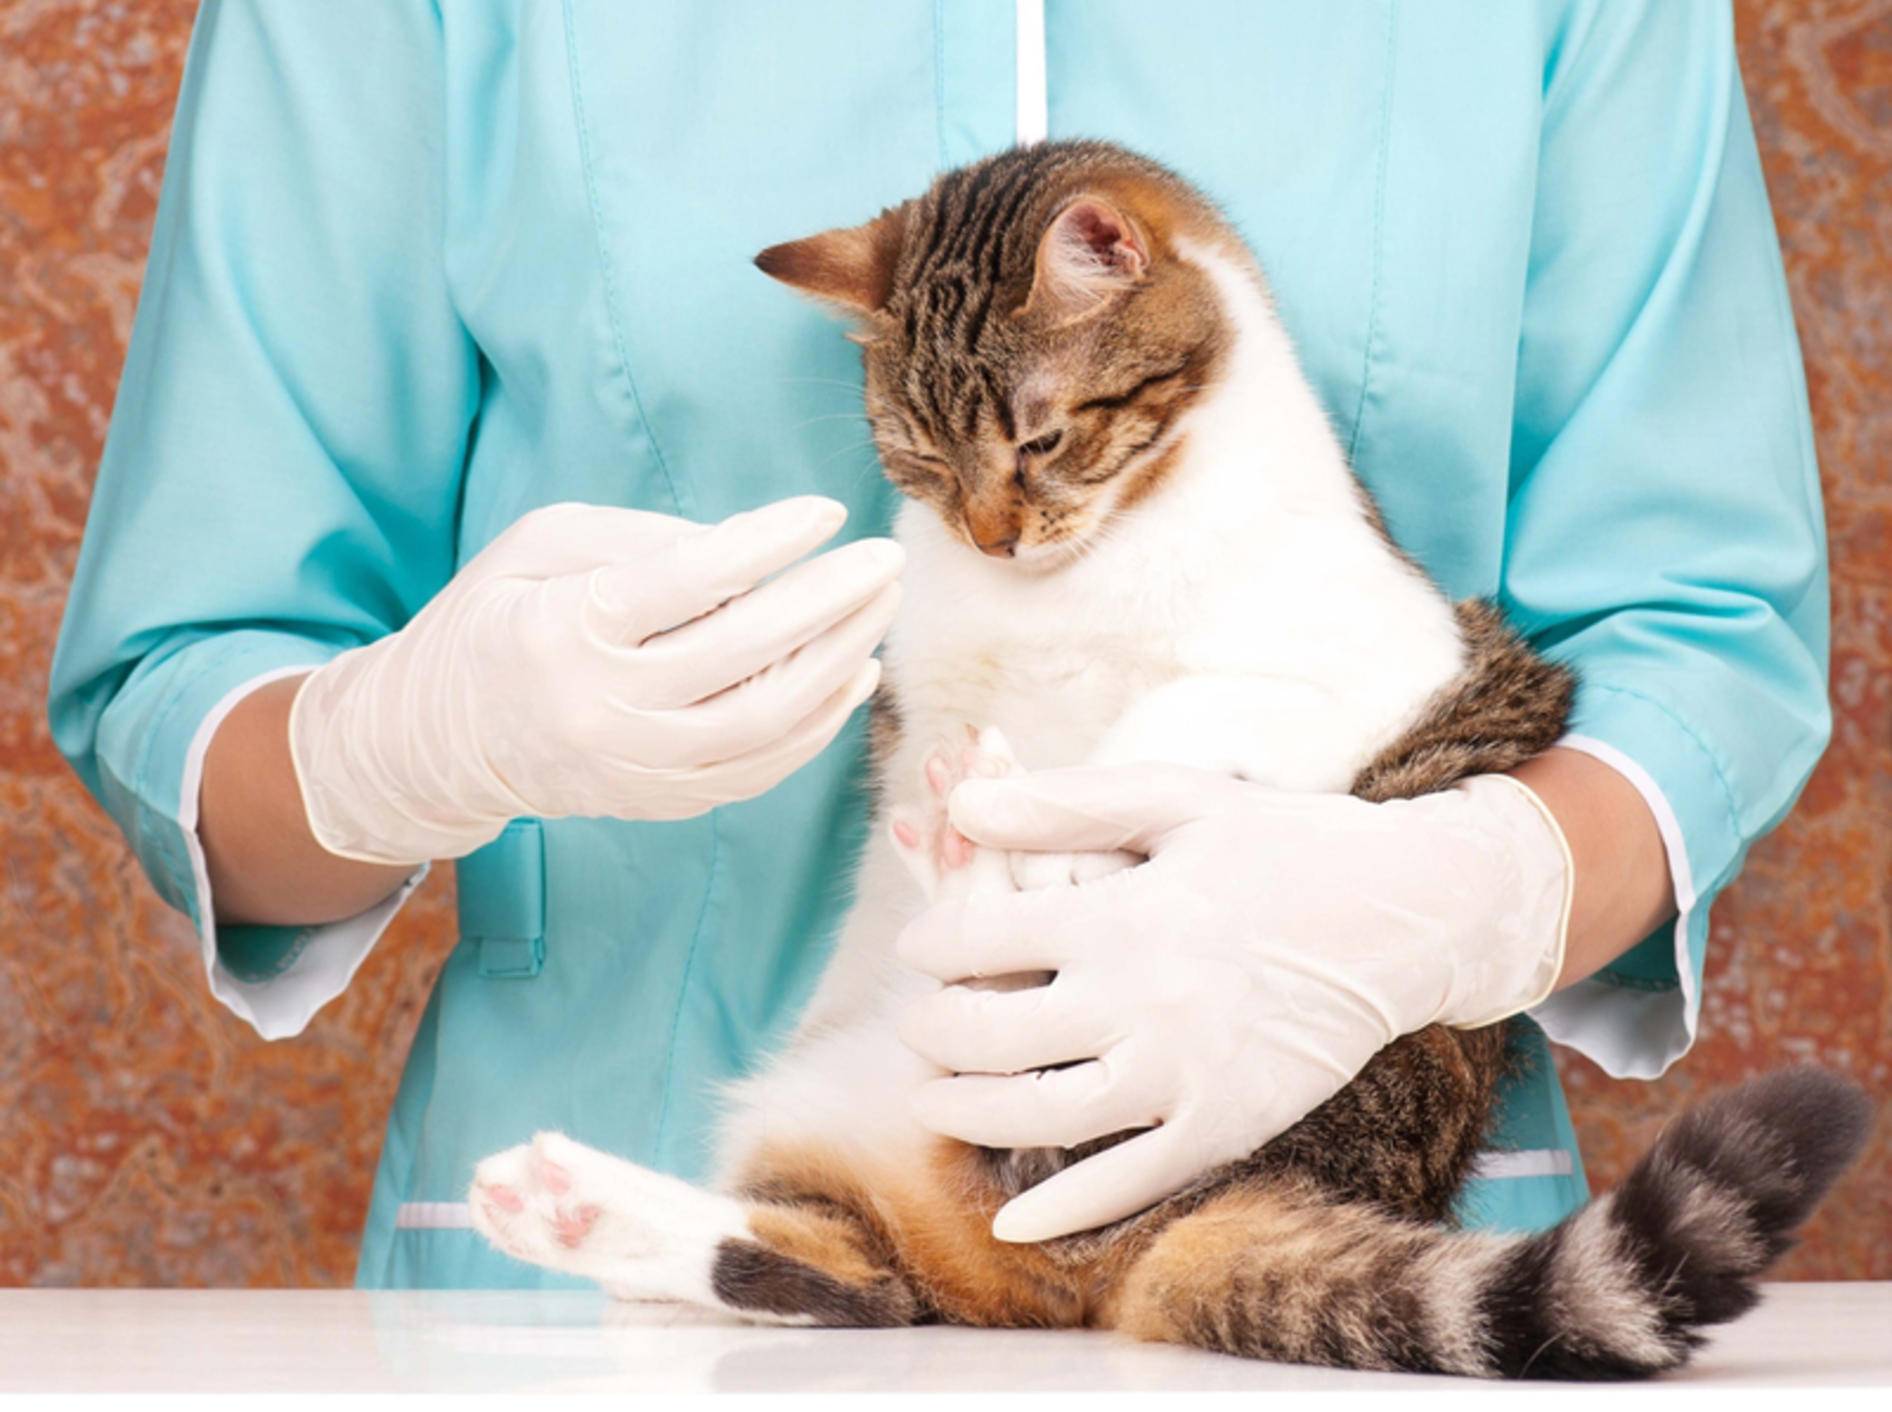 veteriner hekim tarafından meyane edilen kedi